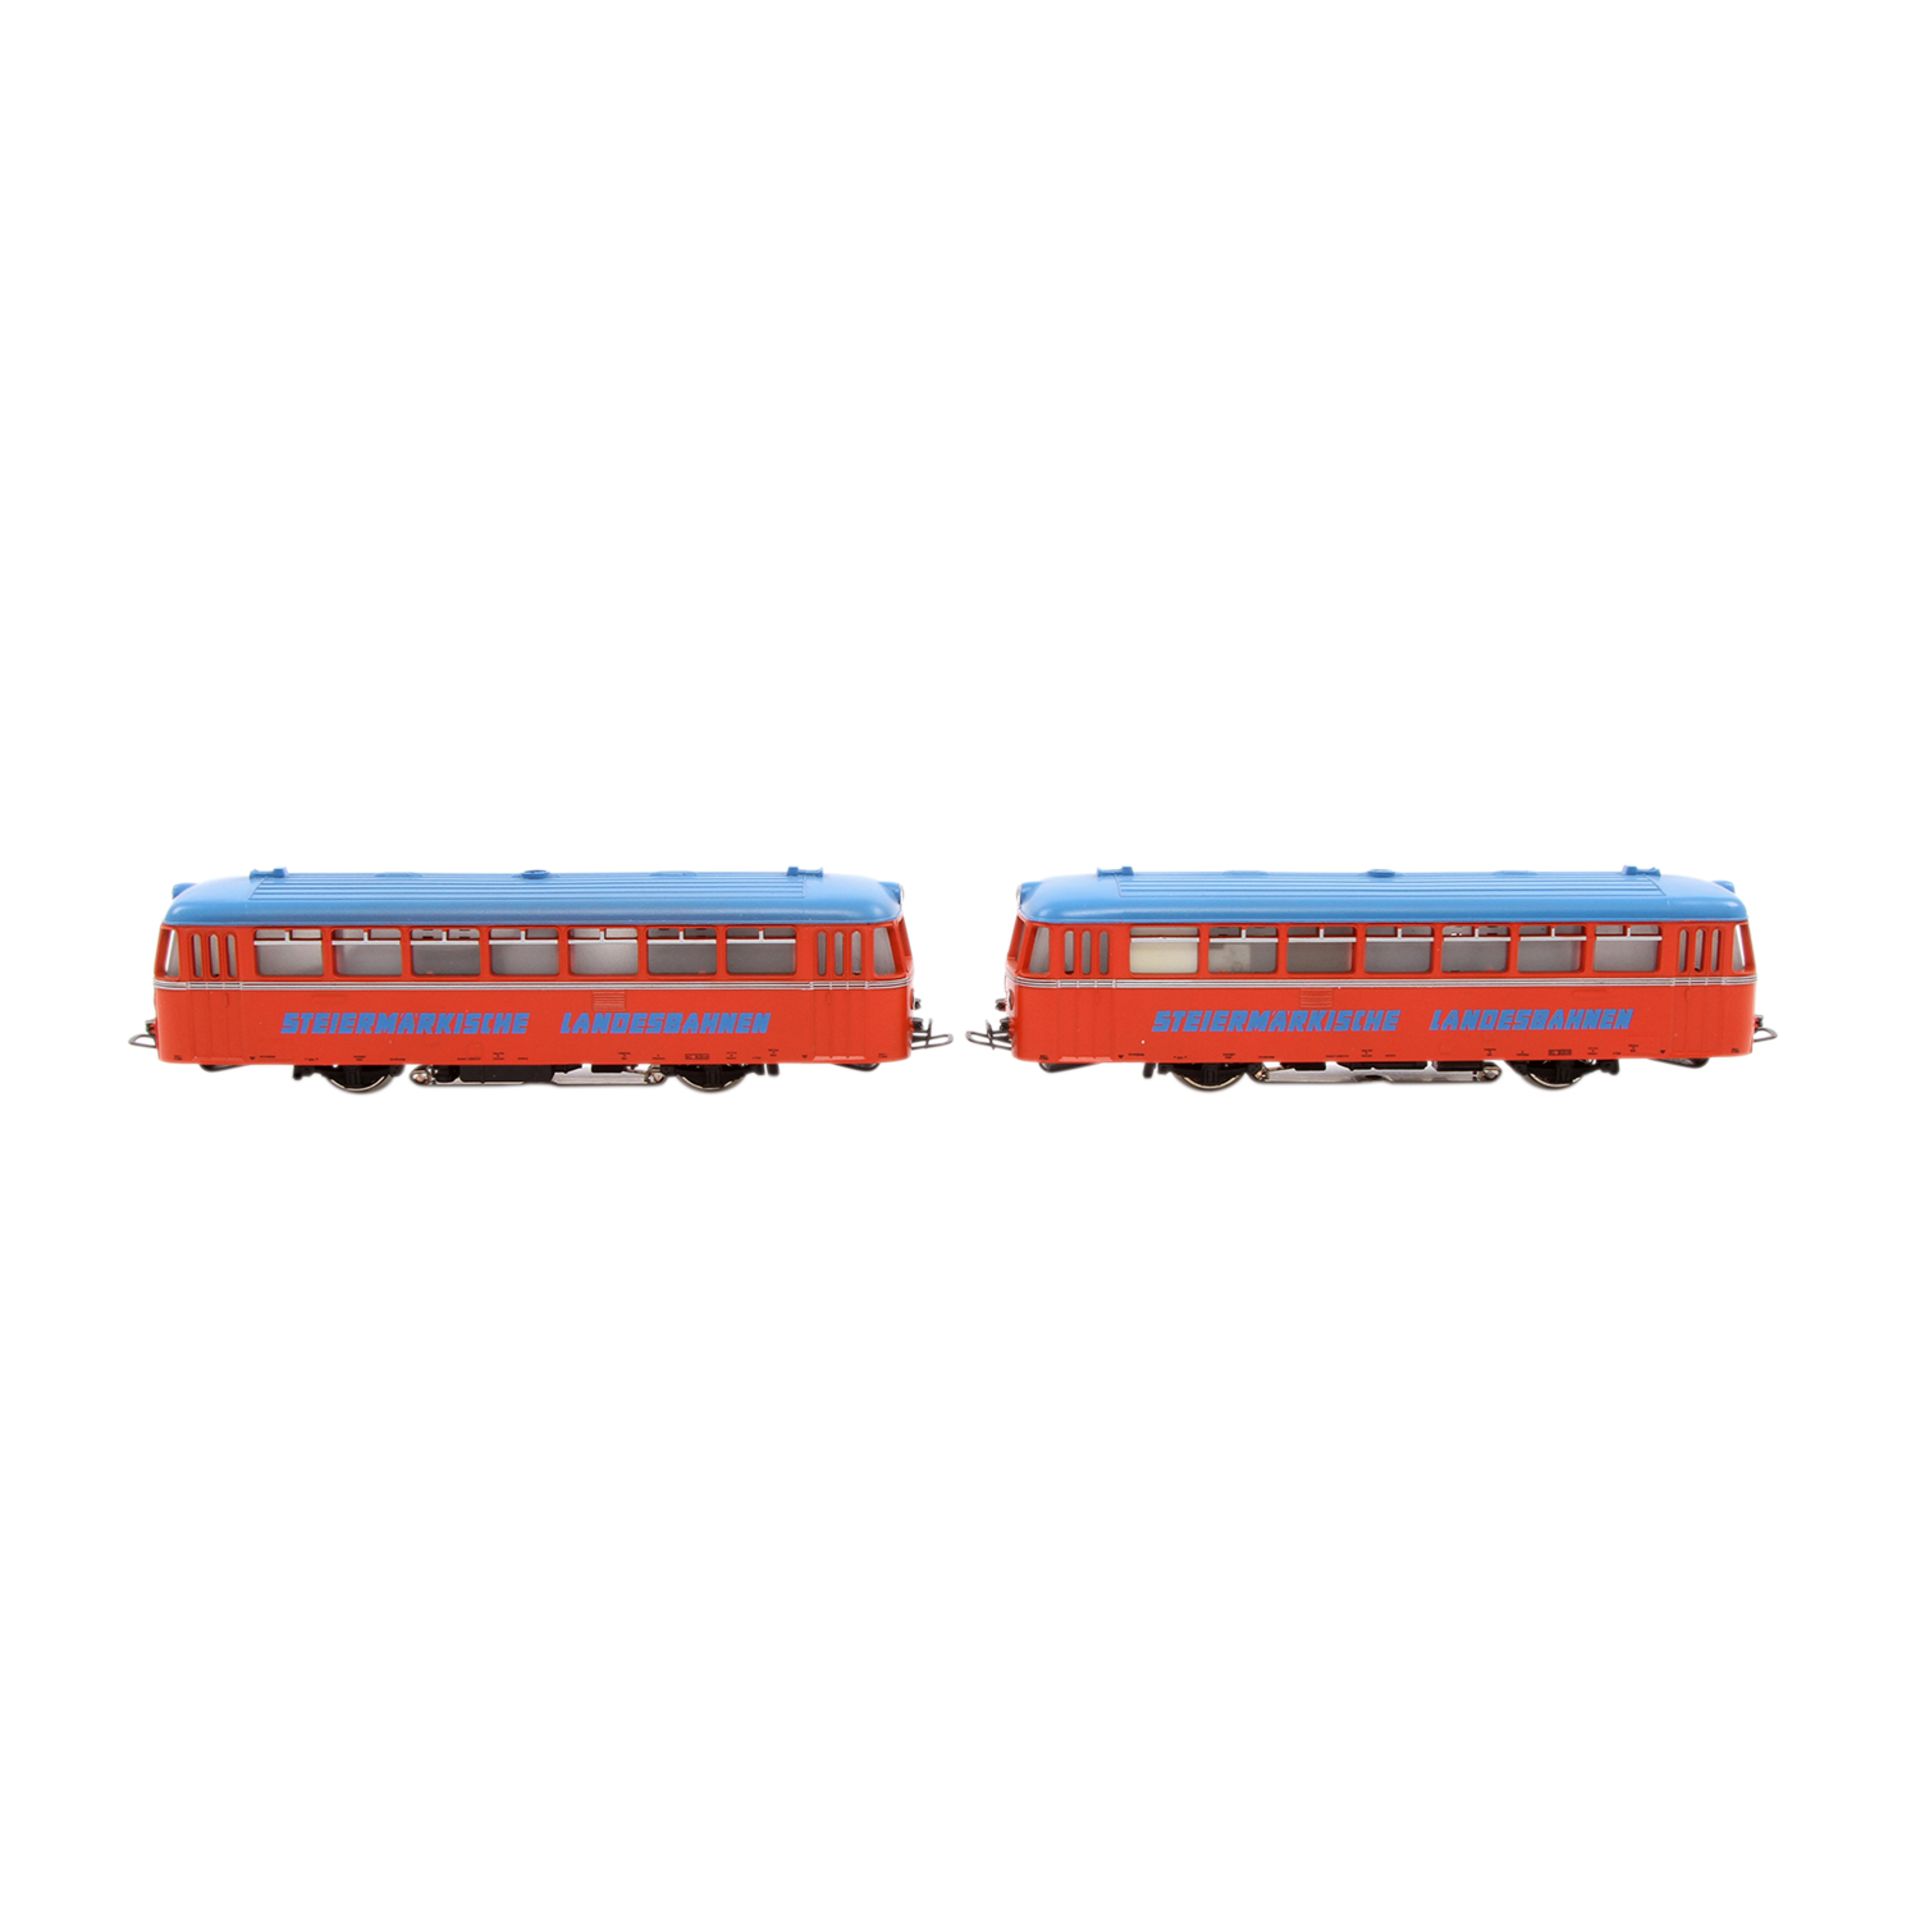 MÄRKLIN Schienenbus mit Beiwagen 3140, Spur H0, Kunststoff-Gehäuse, rot m. blauem Dach, VT 21 und VS - Bild 3 aus 8